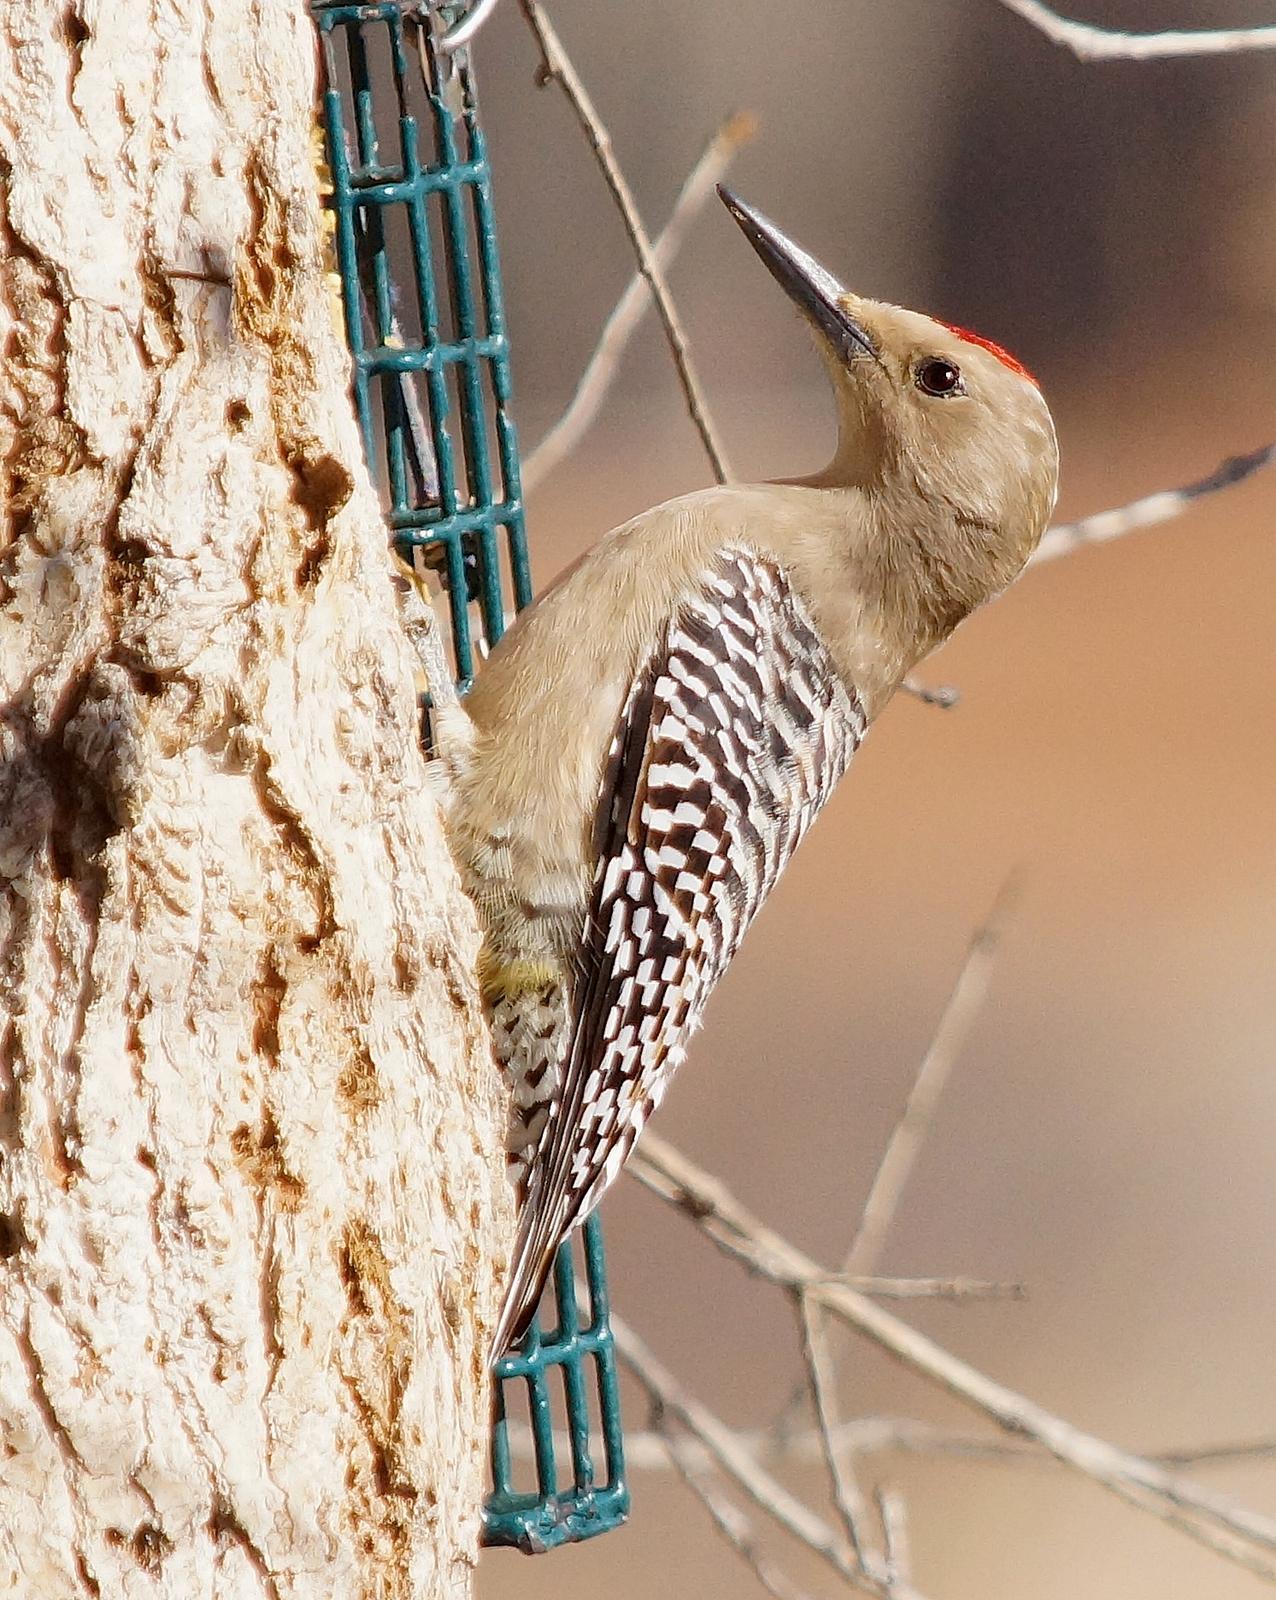 Gila Woodpecker Photo by Gerald Hoekstra